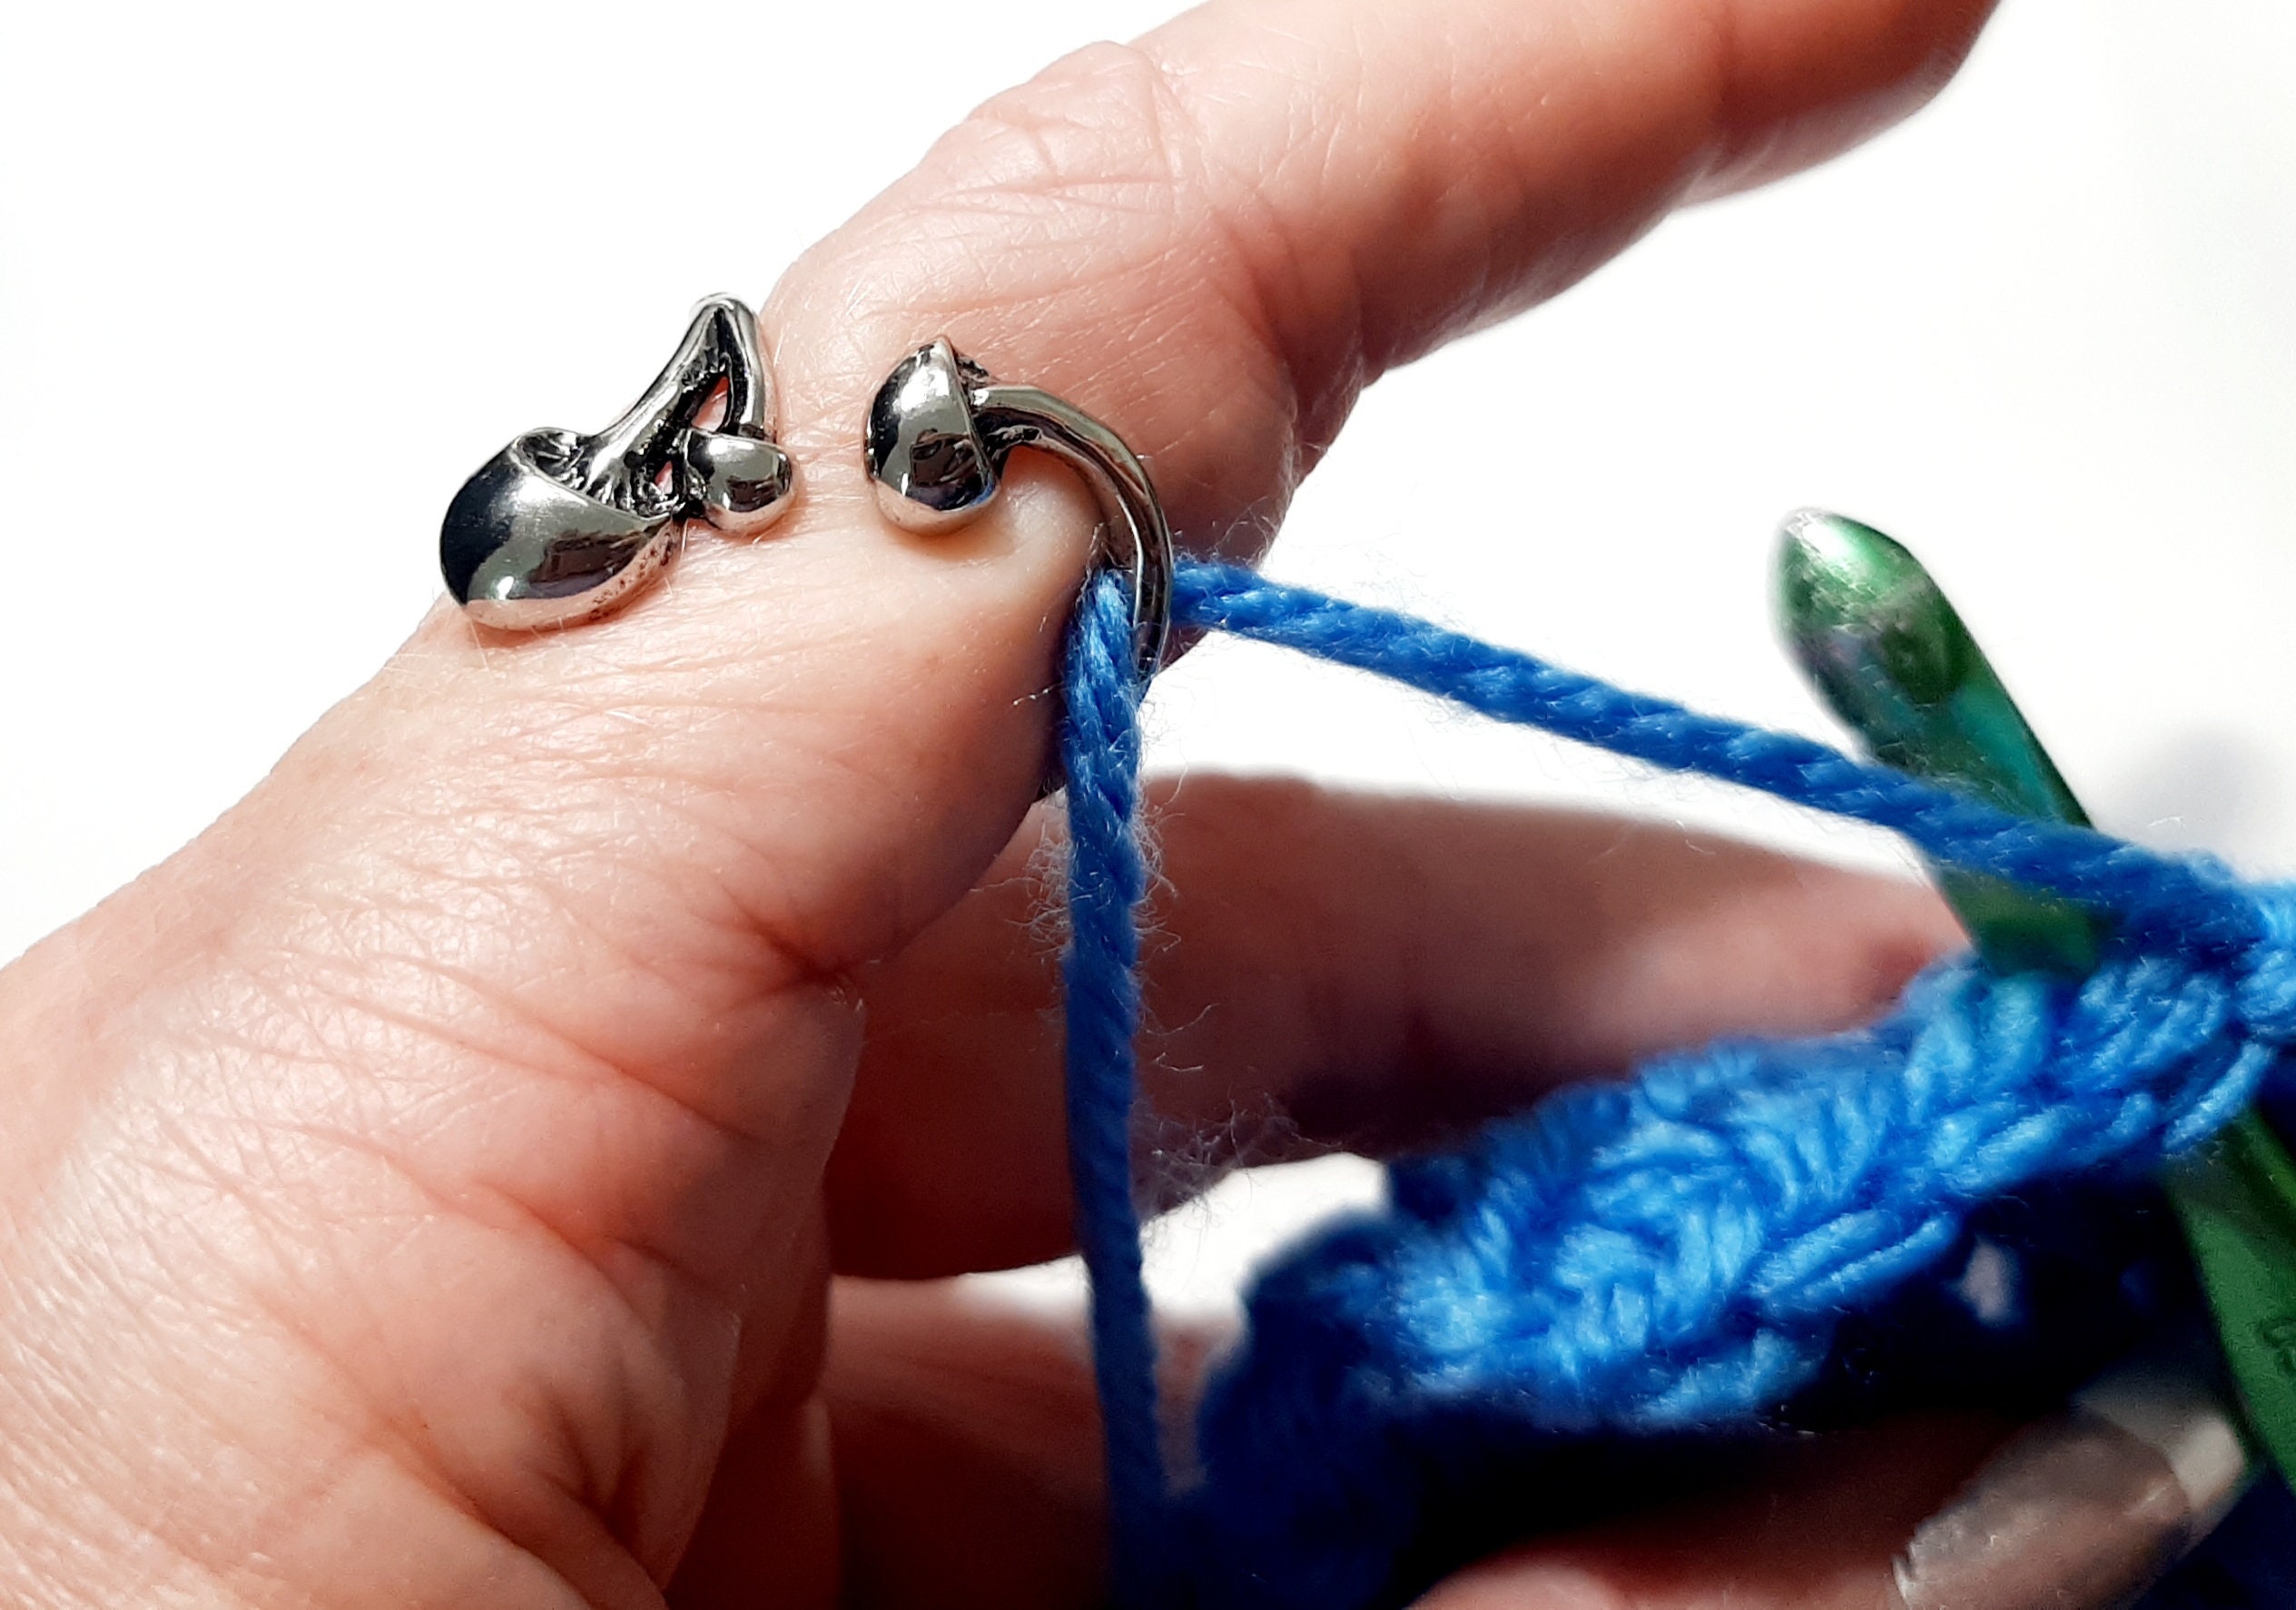 Yarn Tension Ring Octopus Adjustable Size Crochet Ring beginner Knitting  Crocheting Gift crochet Regulator Tool Silver Rose Gold Black 